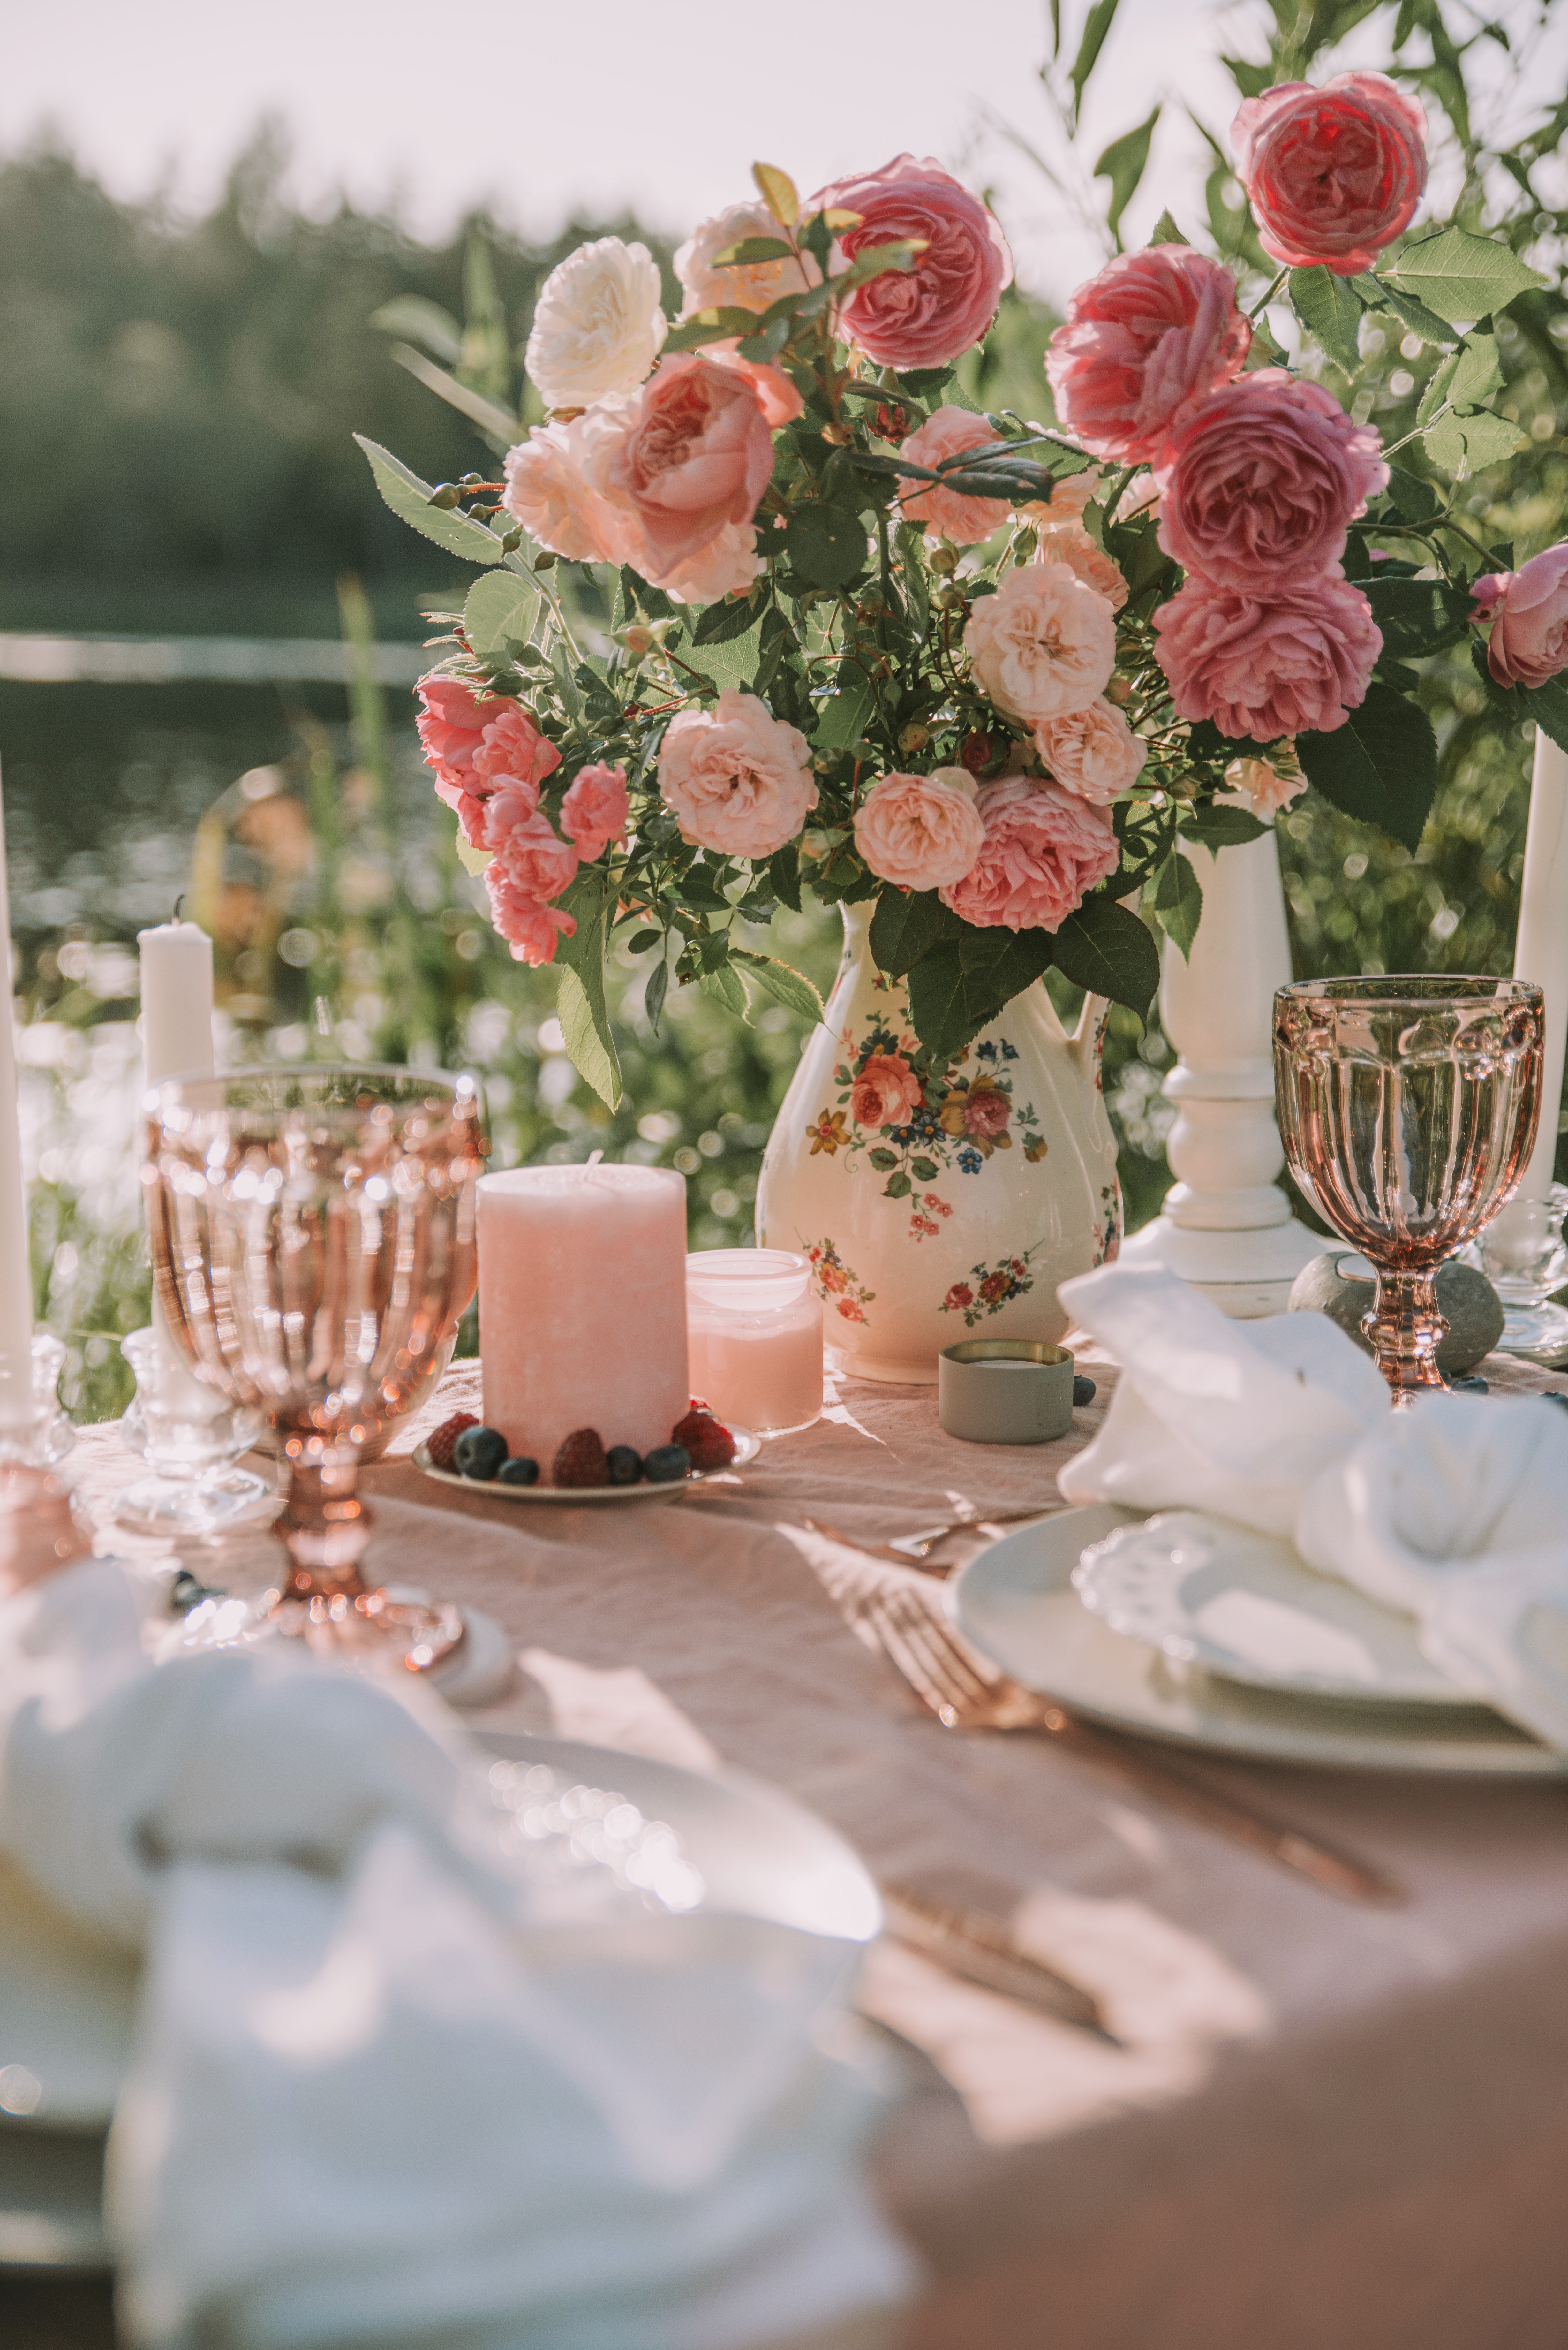 roses, bouquet, flowers, table, decoration 1080p